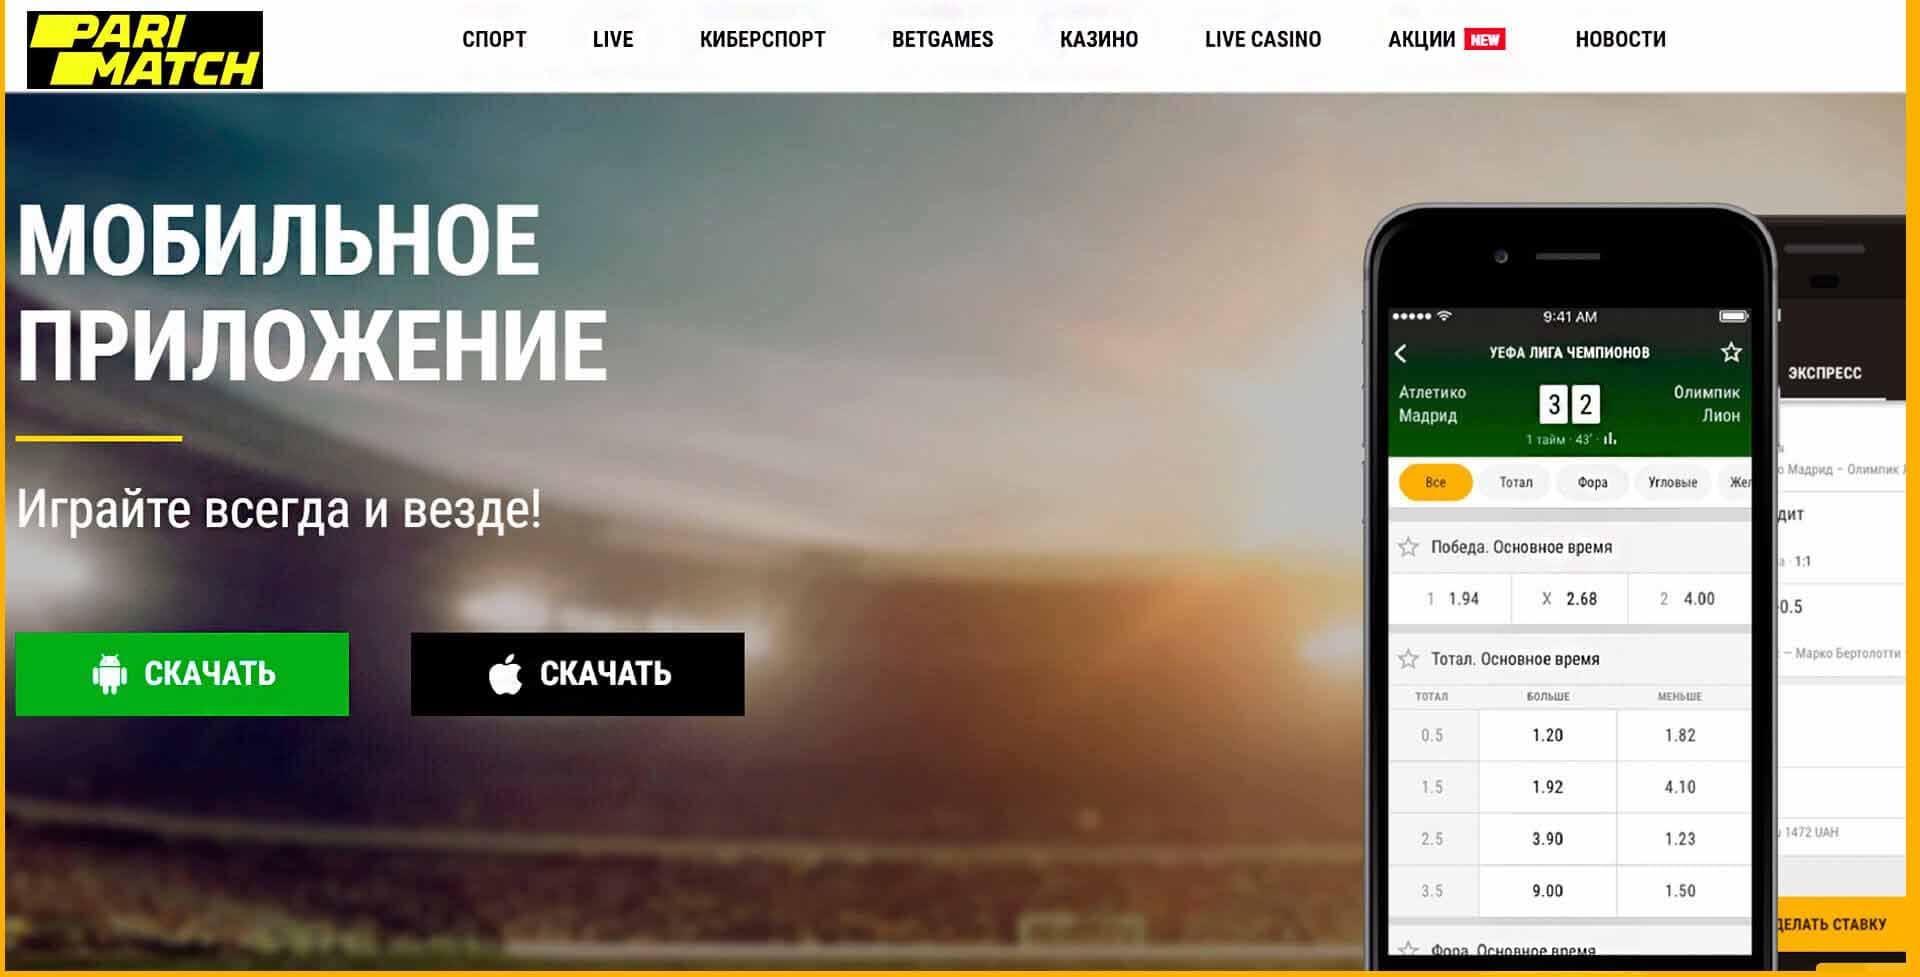 ставки на спорт официальный сайт скачать бесплатно русская версия для андроид